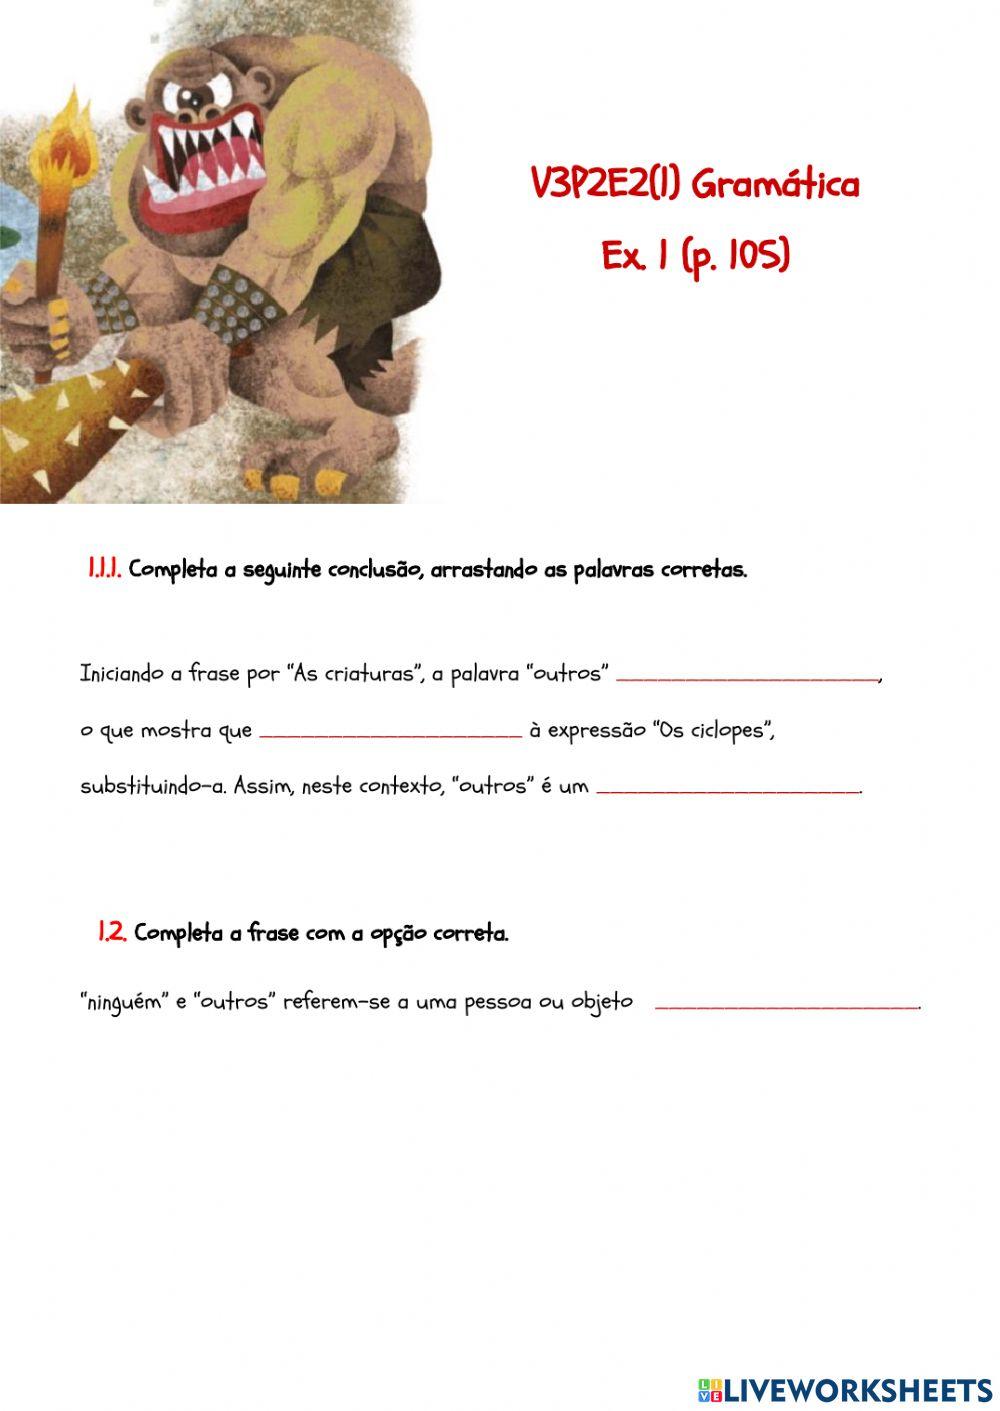 V3P2E2(1) Gramática Ex. 1 (p. 105)